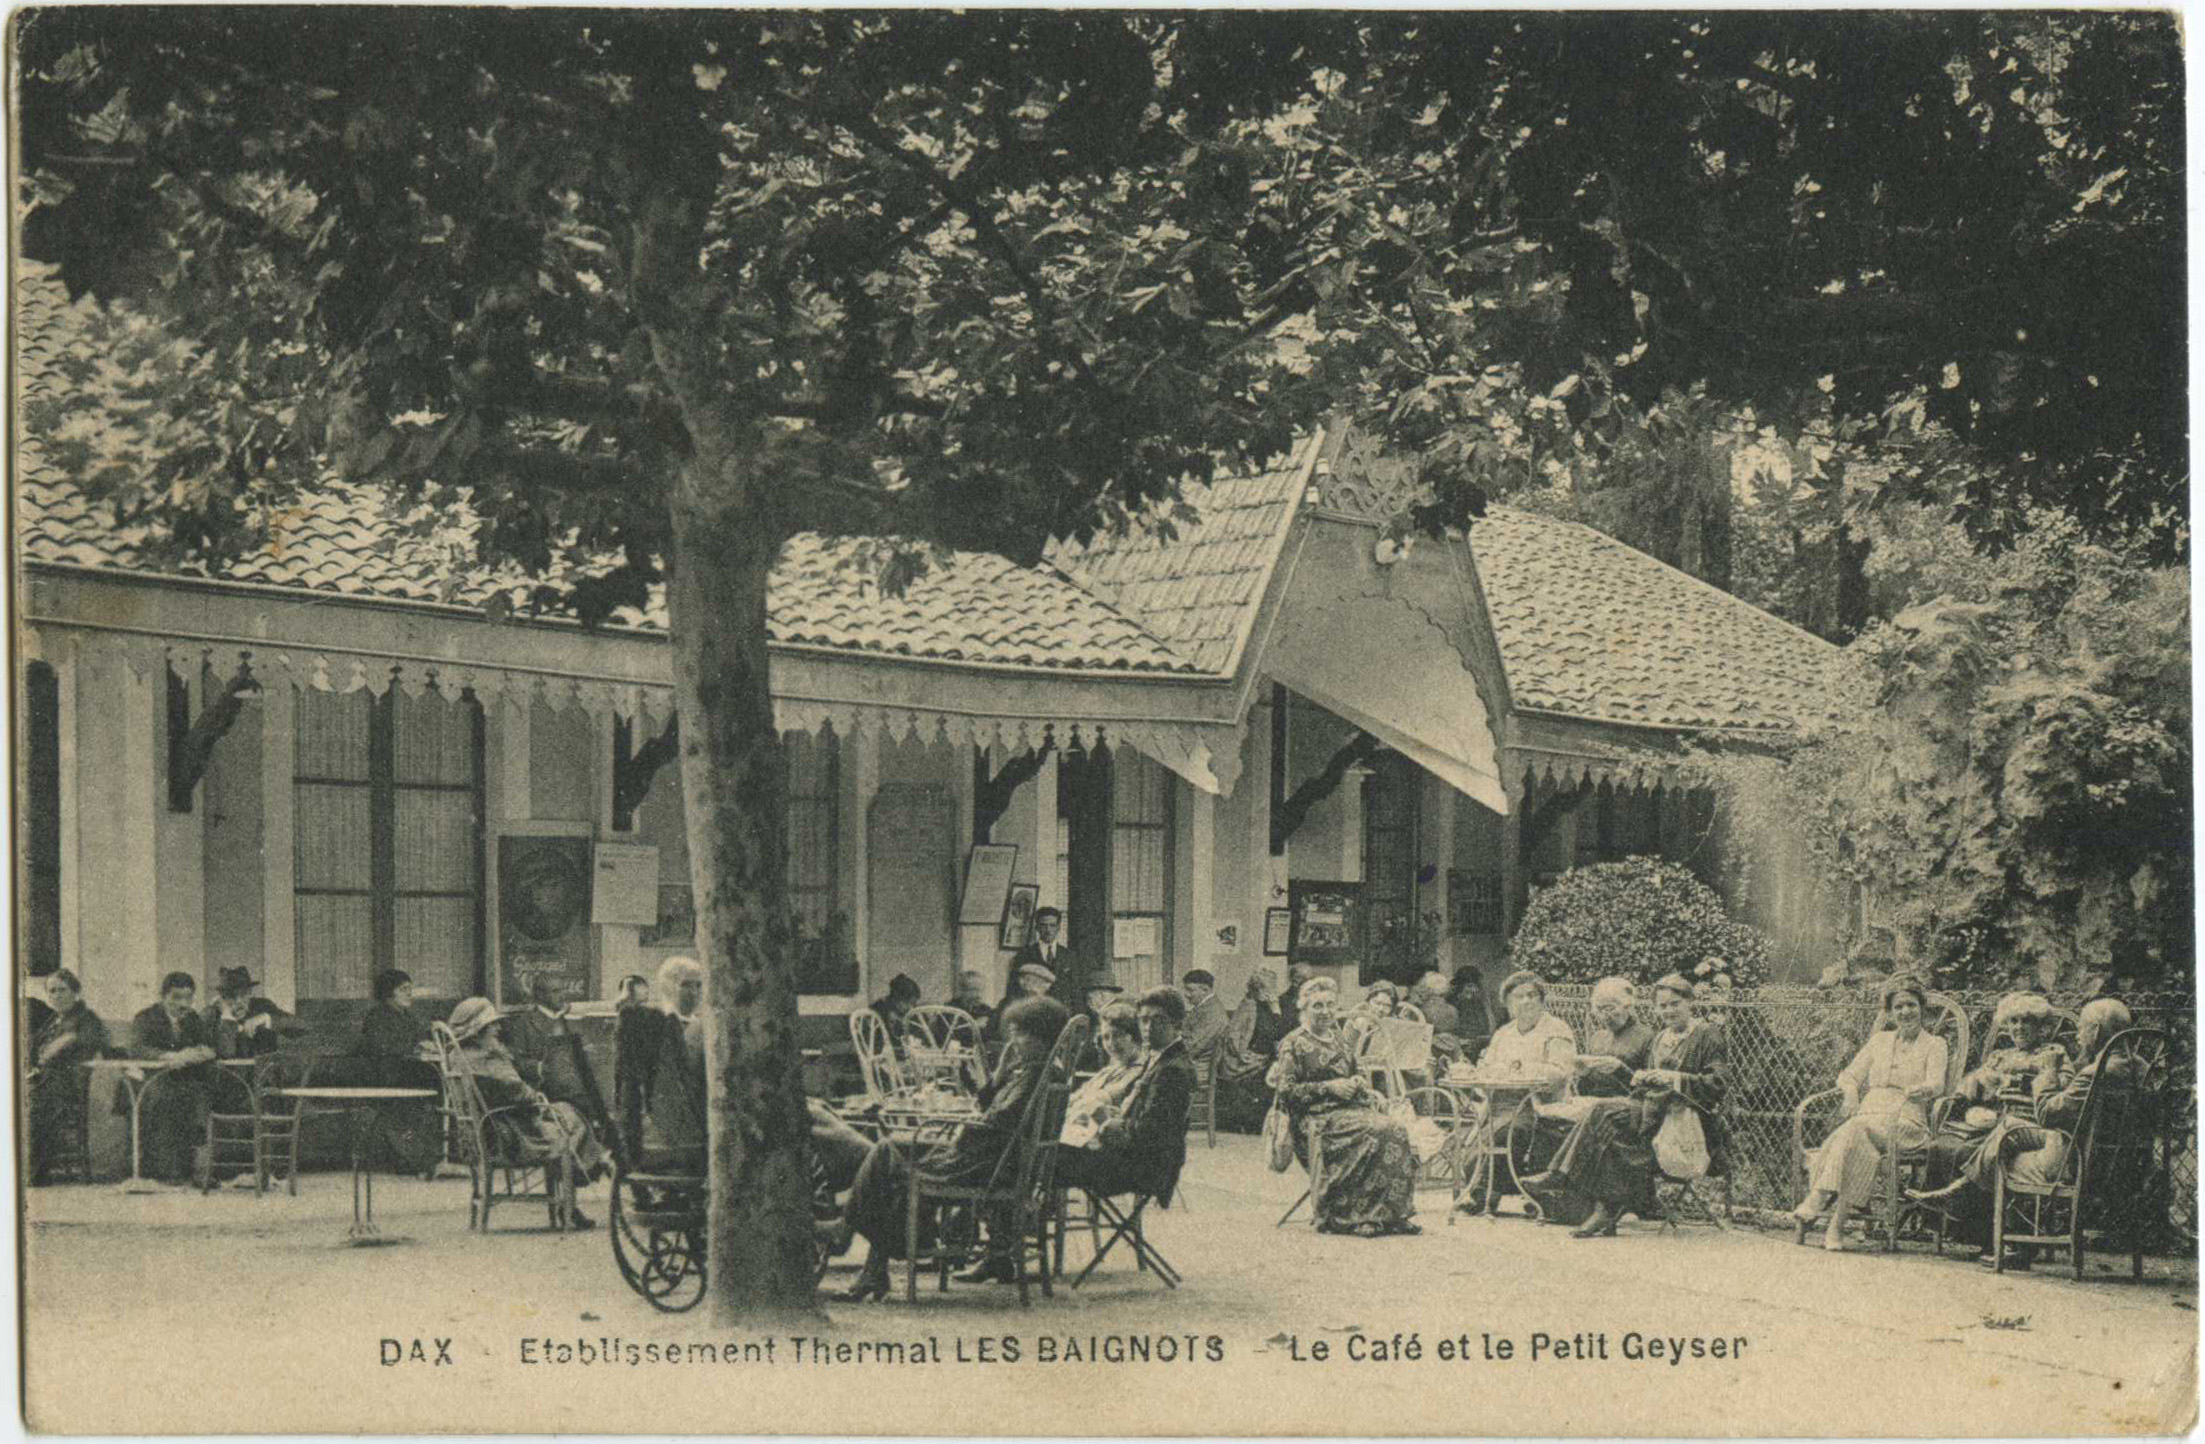 Dax - Etablissement Thermal LES BAIGNOTS - Le Café et le Petit Geyser